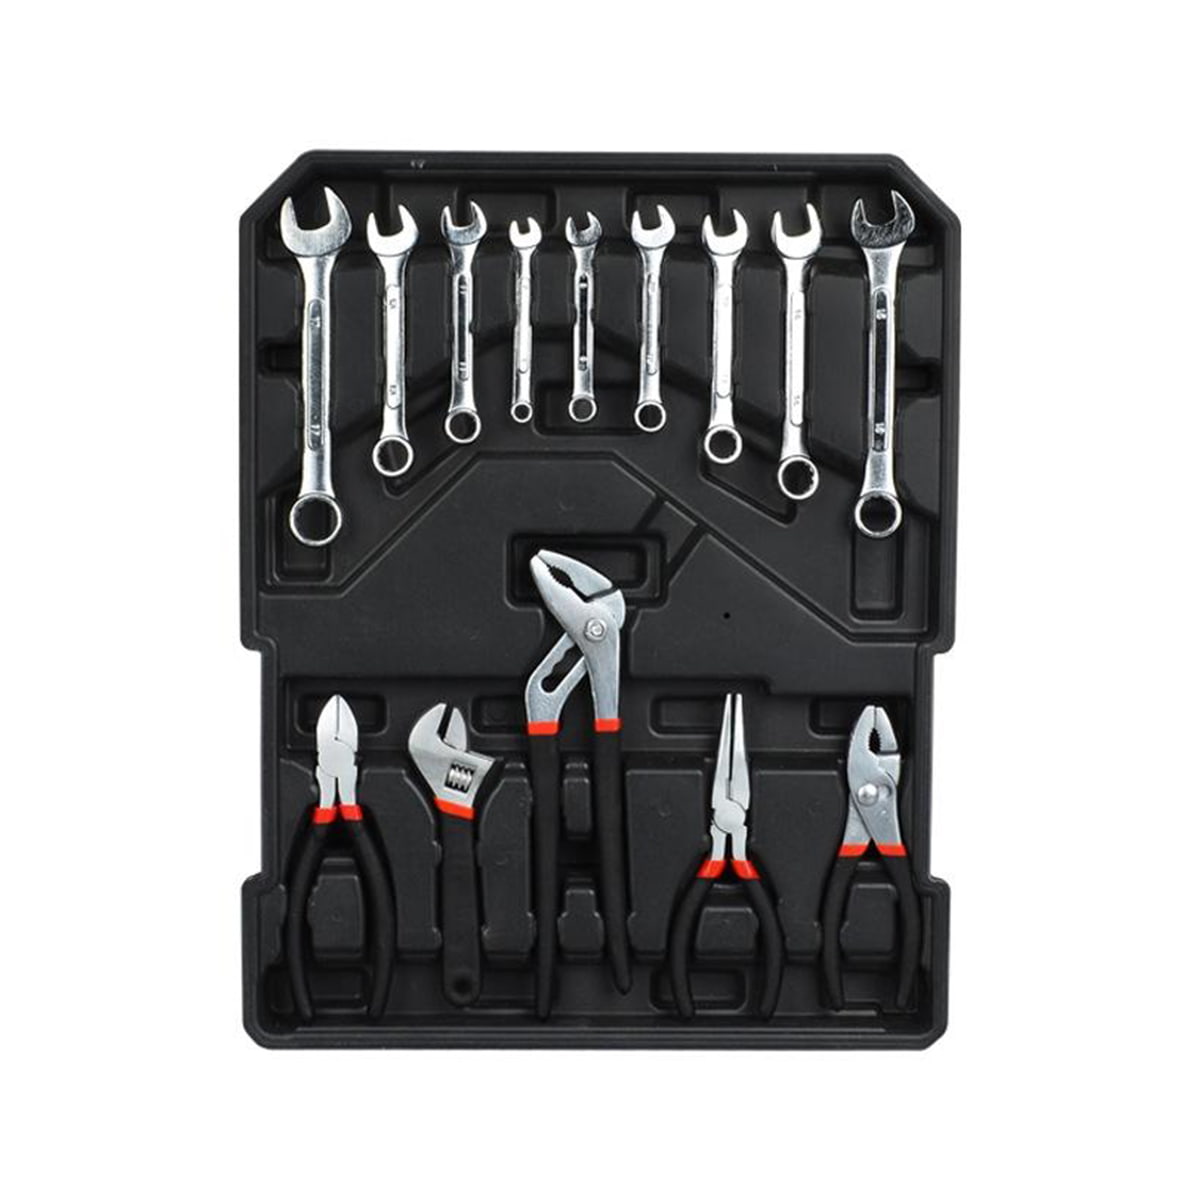 499-teiliges Ferramentas Professional Hardware Automotive Tool Socket Kit de Reparao de Automotive Tools Set